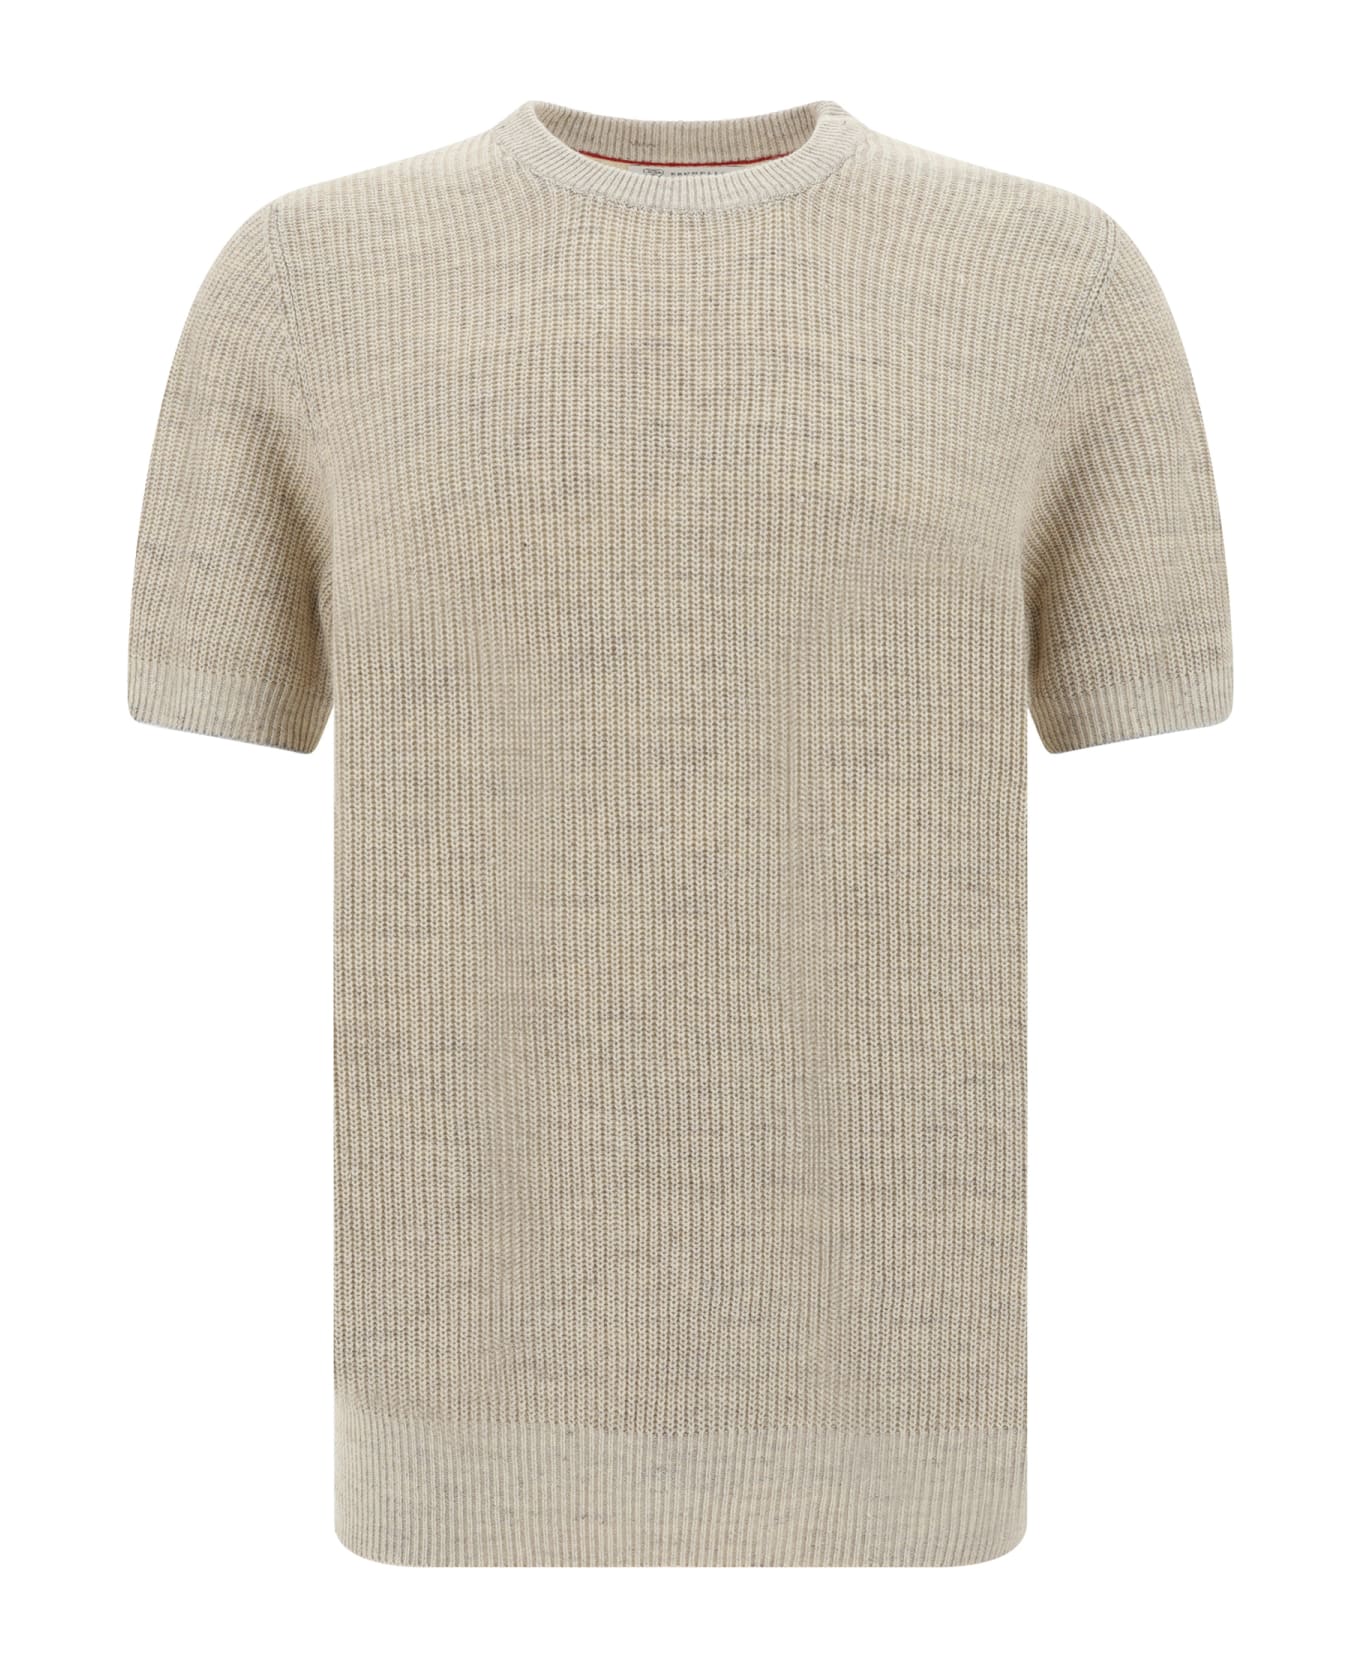 Brunello Cucinelli T-shirt - Oyster+grigio Chiaro